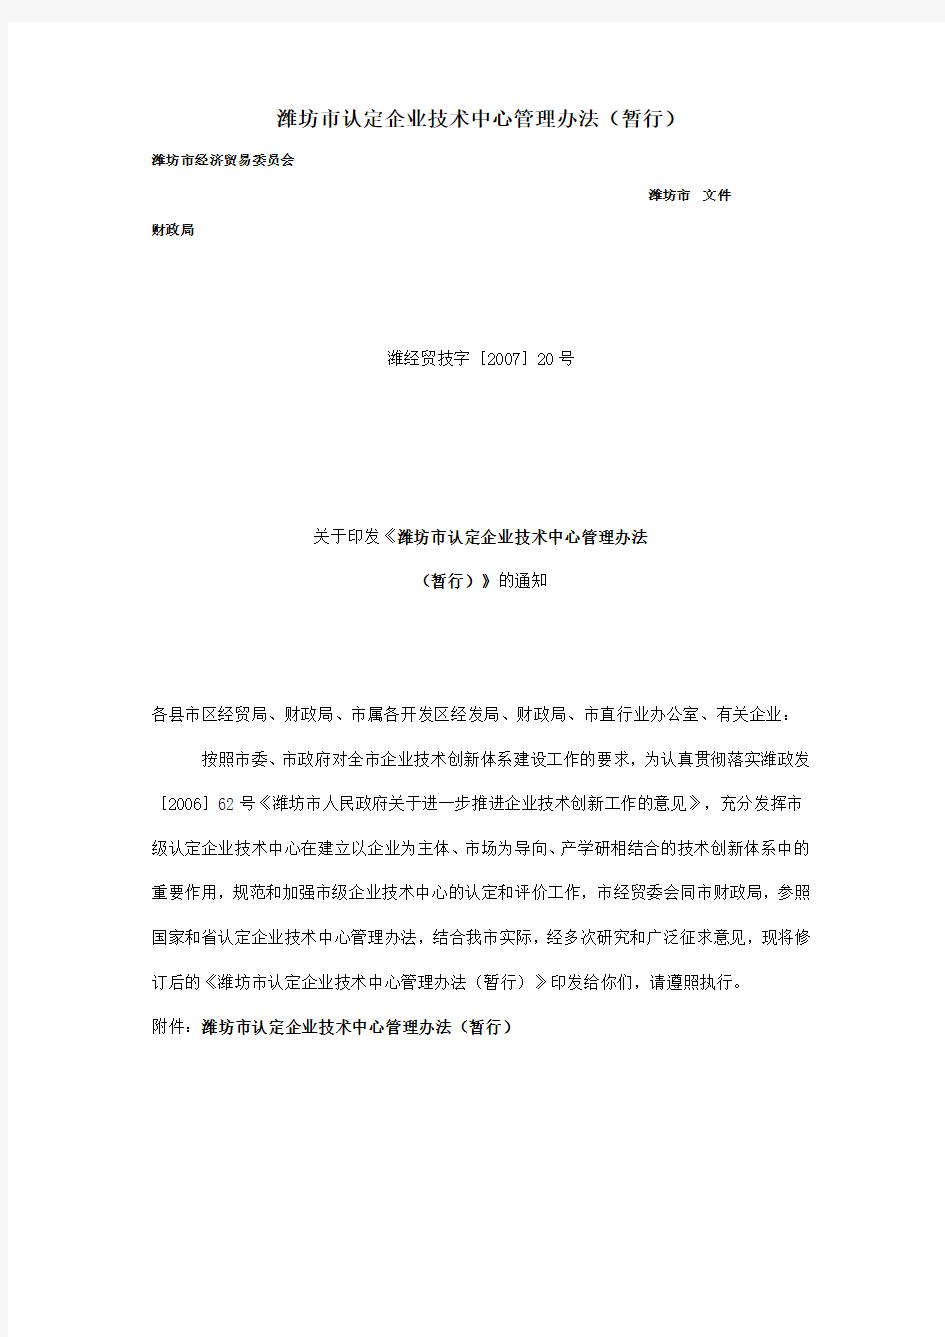 潍坊市认定企业技术中心管理办法(暂行)